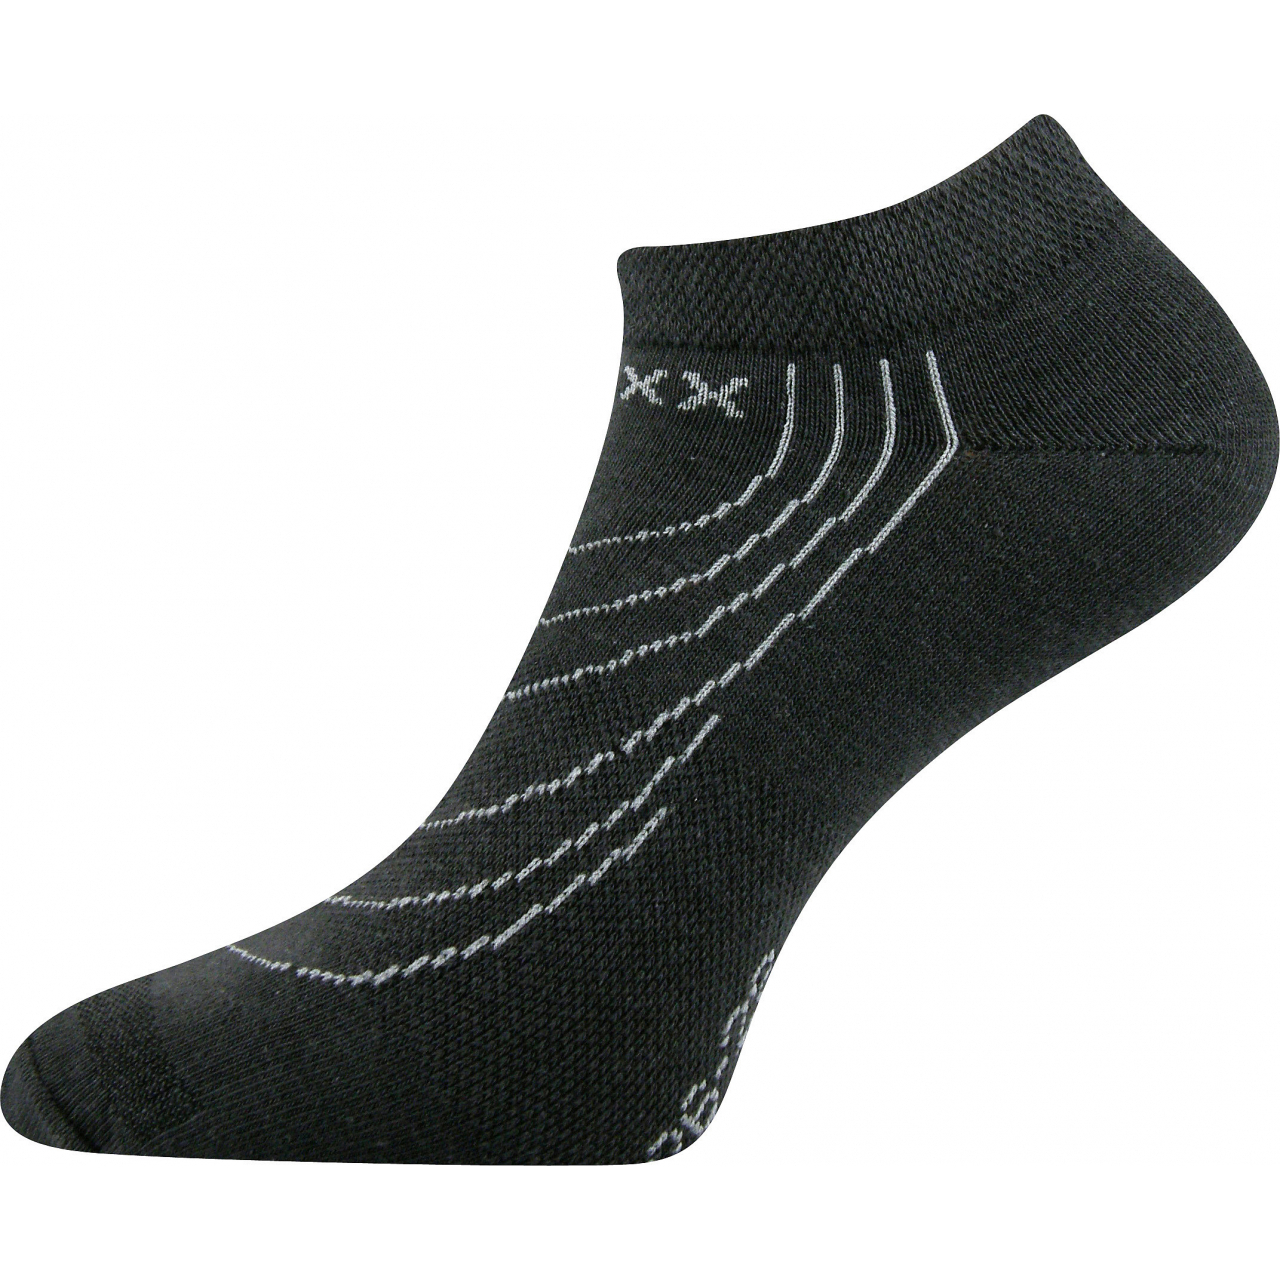 Ponožky nízké Voxx Rex - tmavě šedé, 43-46